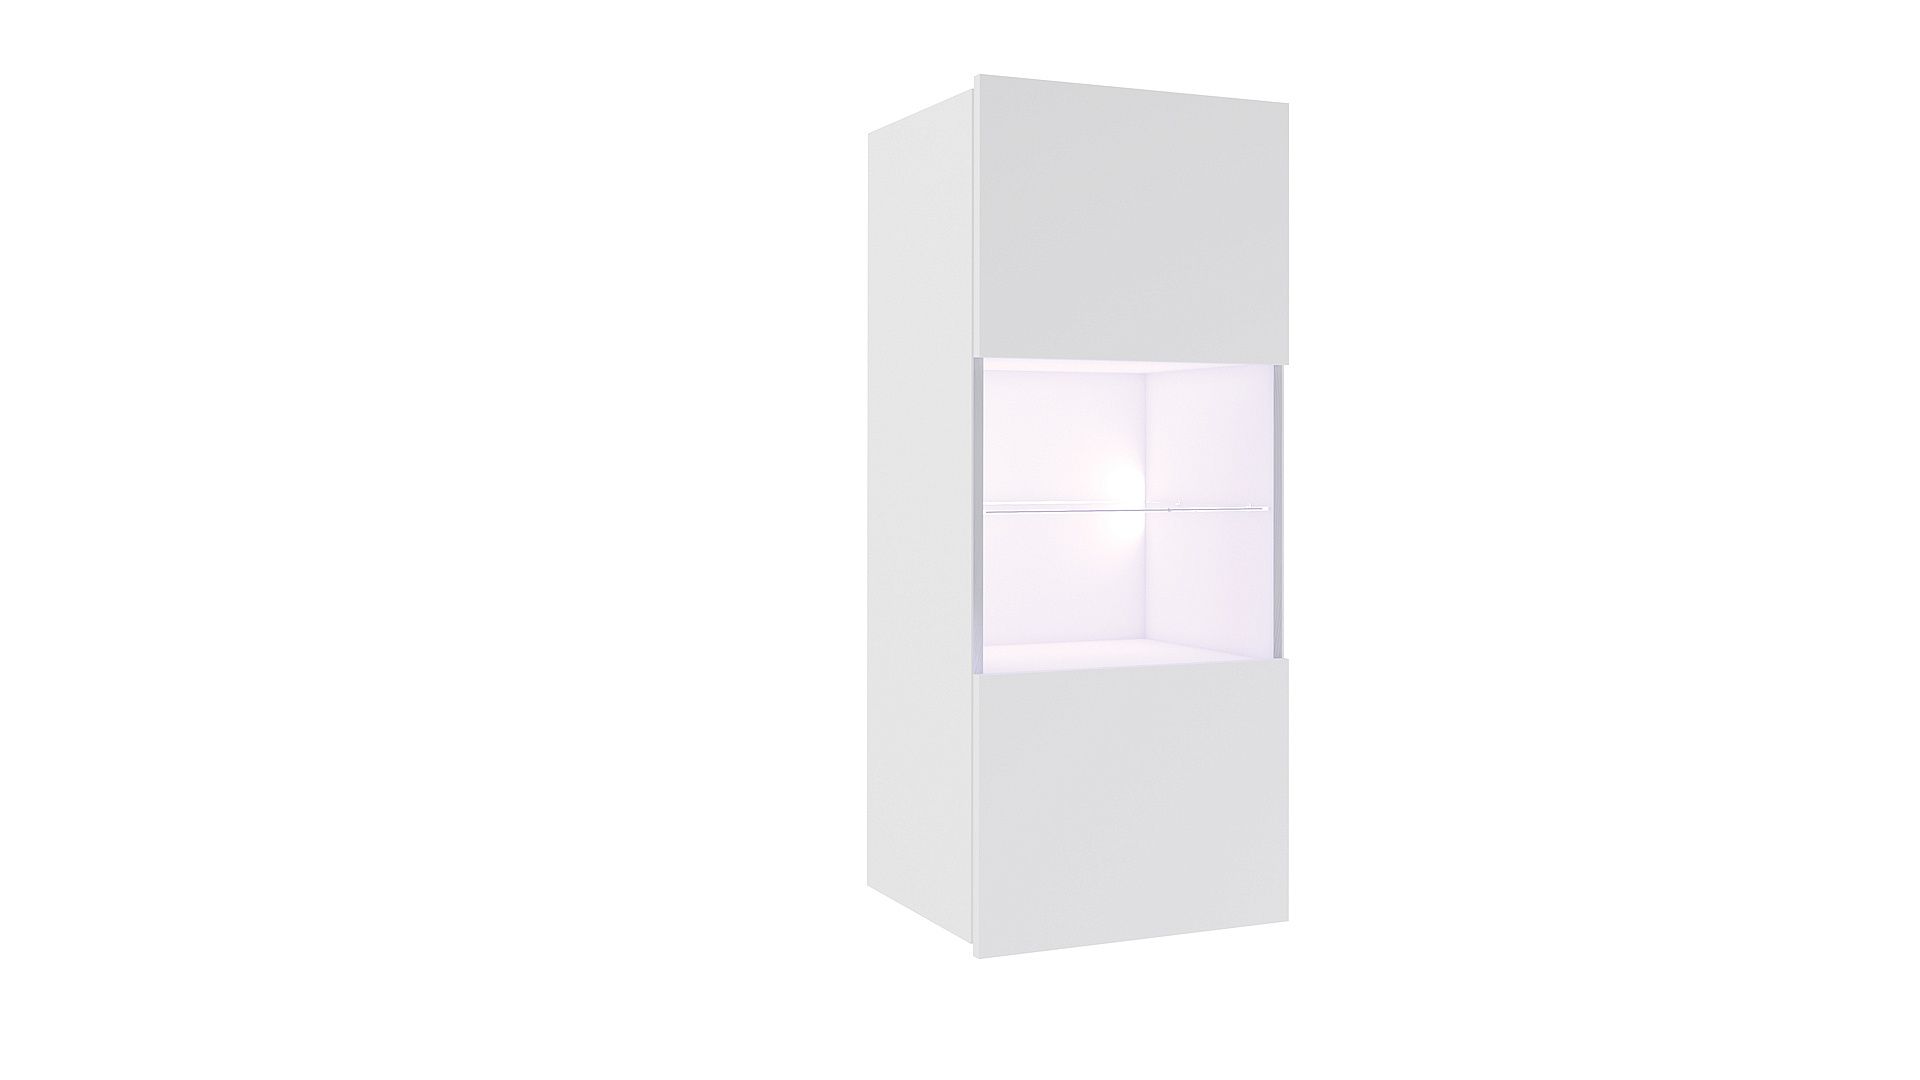 Závěsná vitrína BRINICA, 45x117x32, bílá/bílý lesk - Expedo s.r.o.